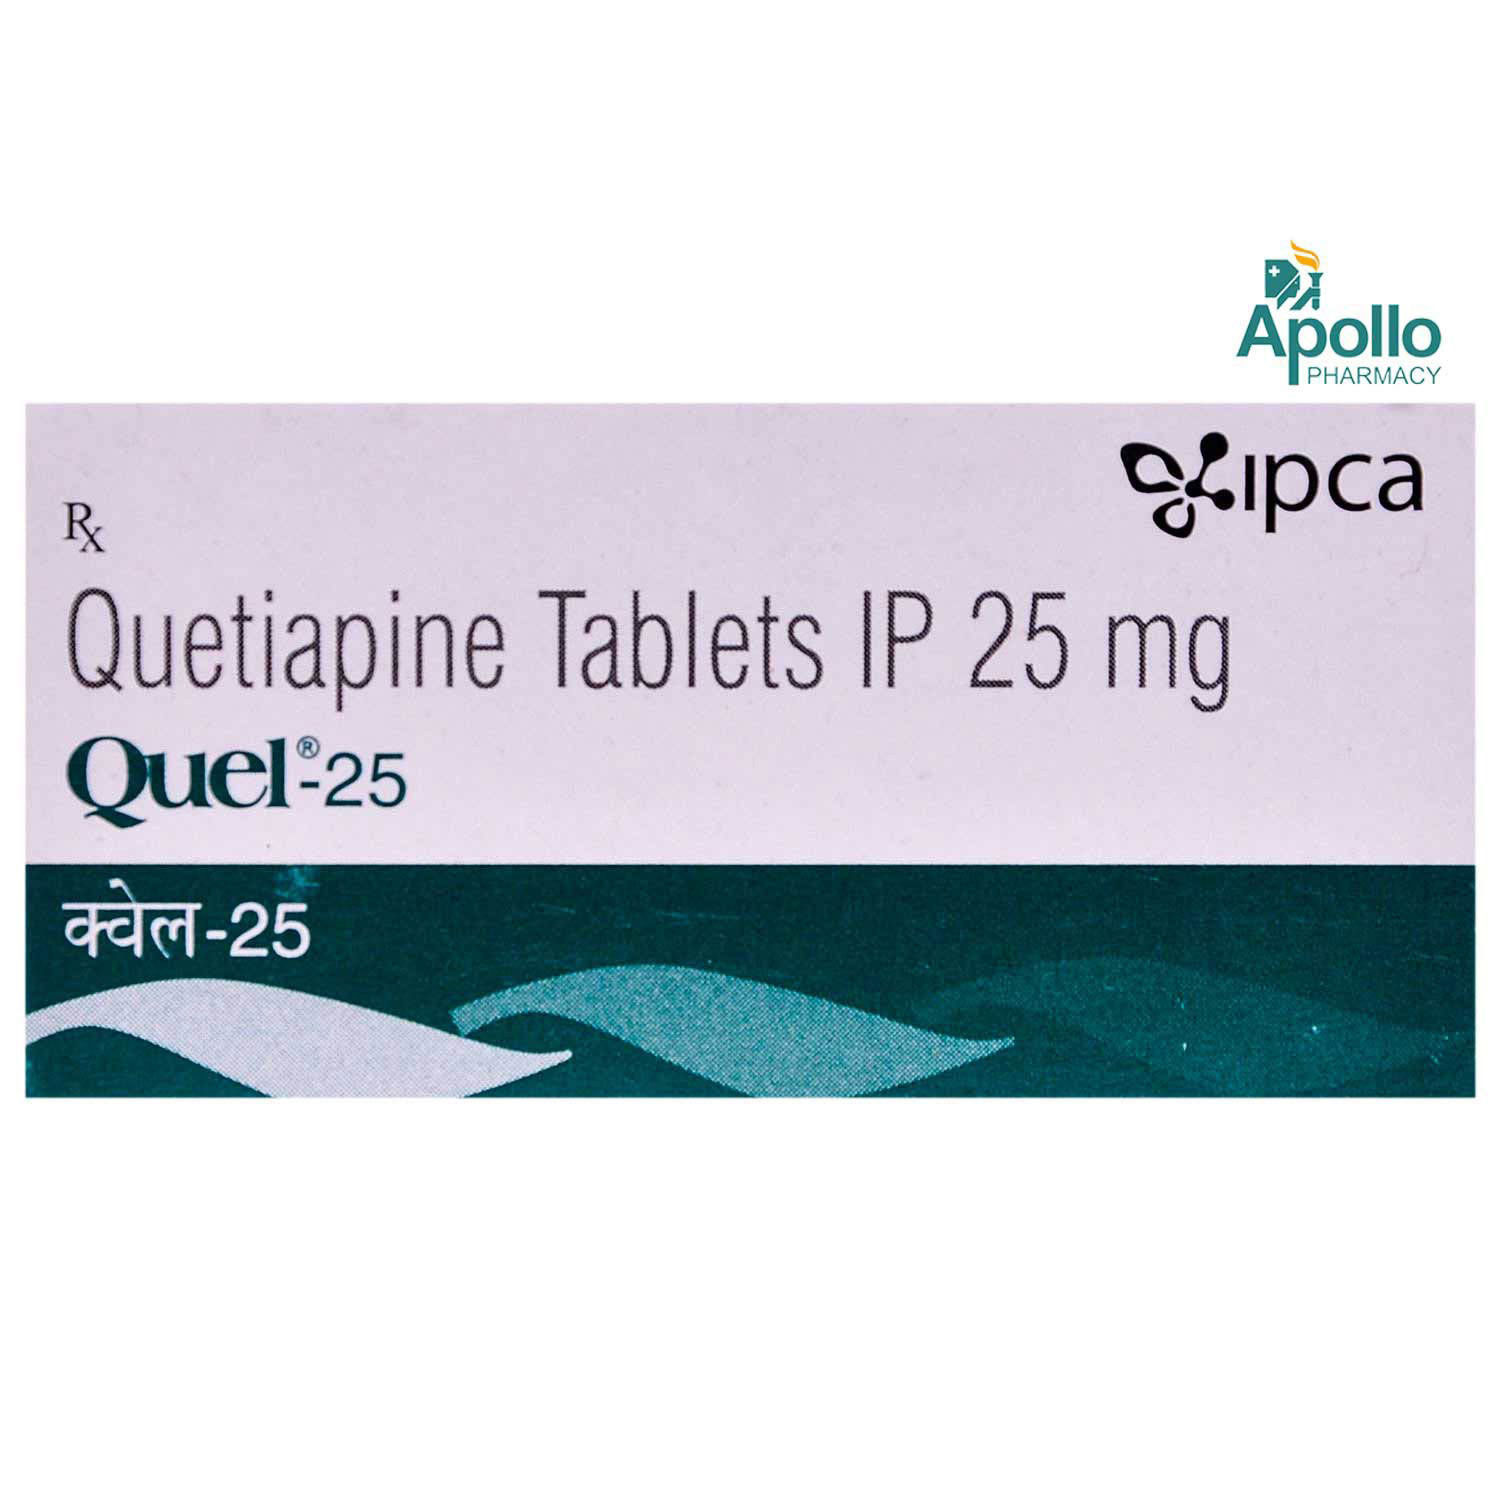 Buy Quel 25 Tablet 10's Online